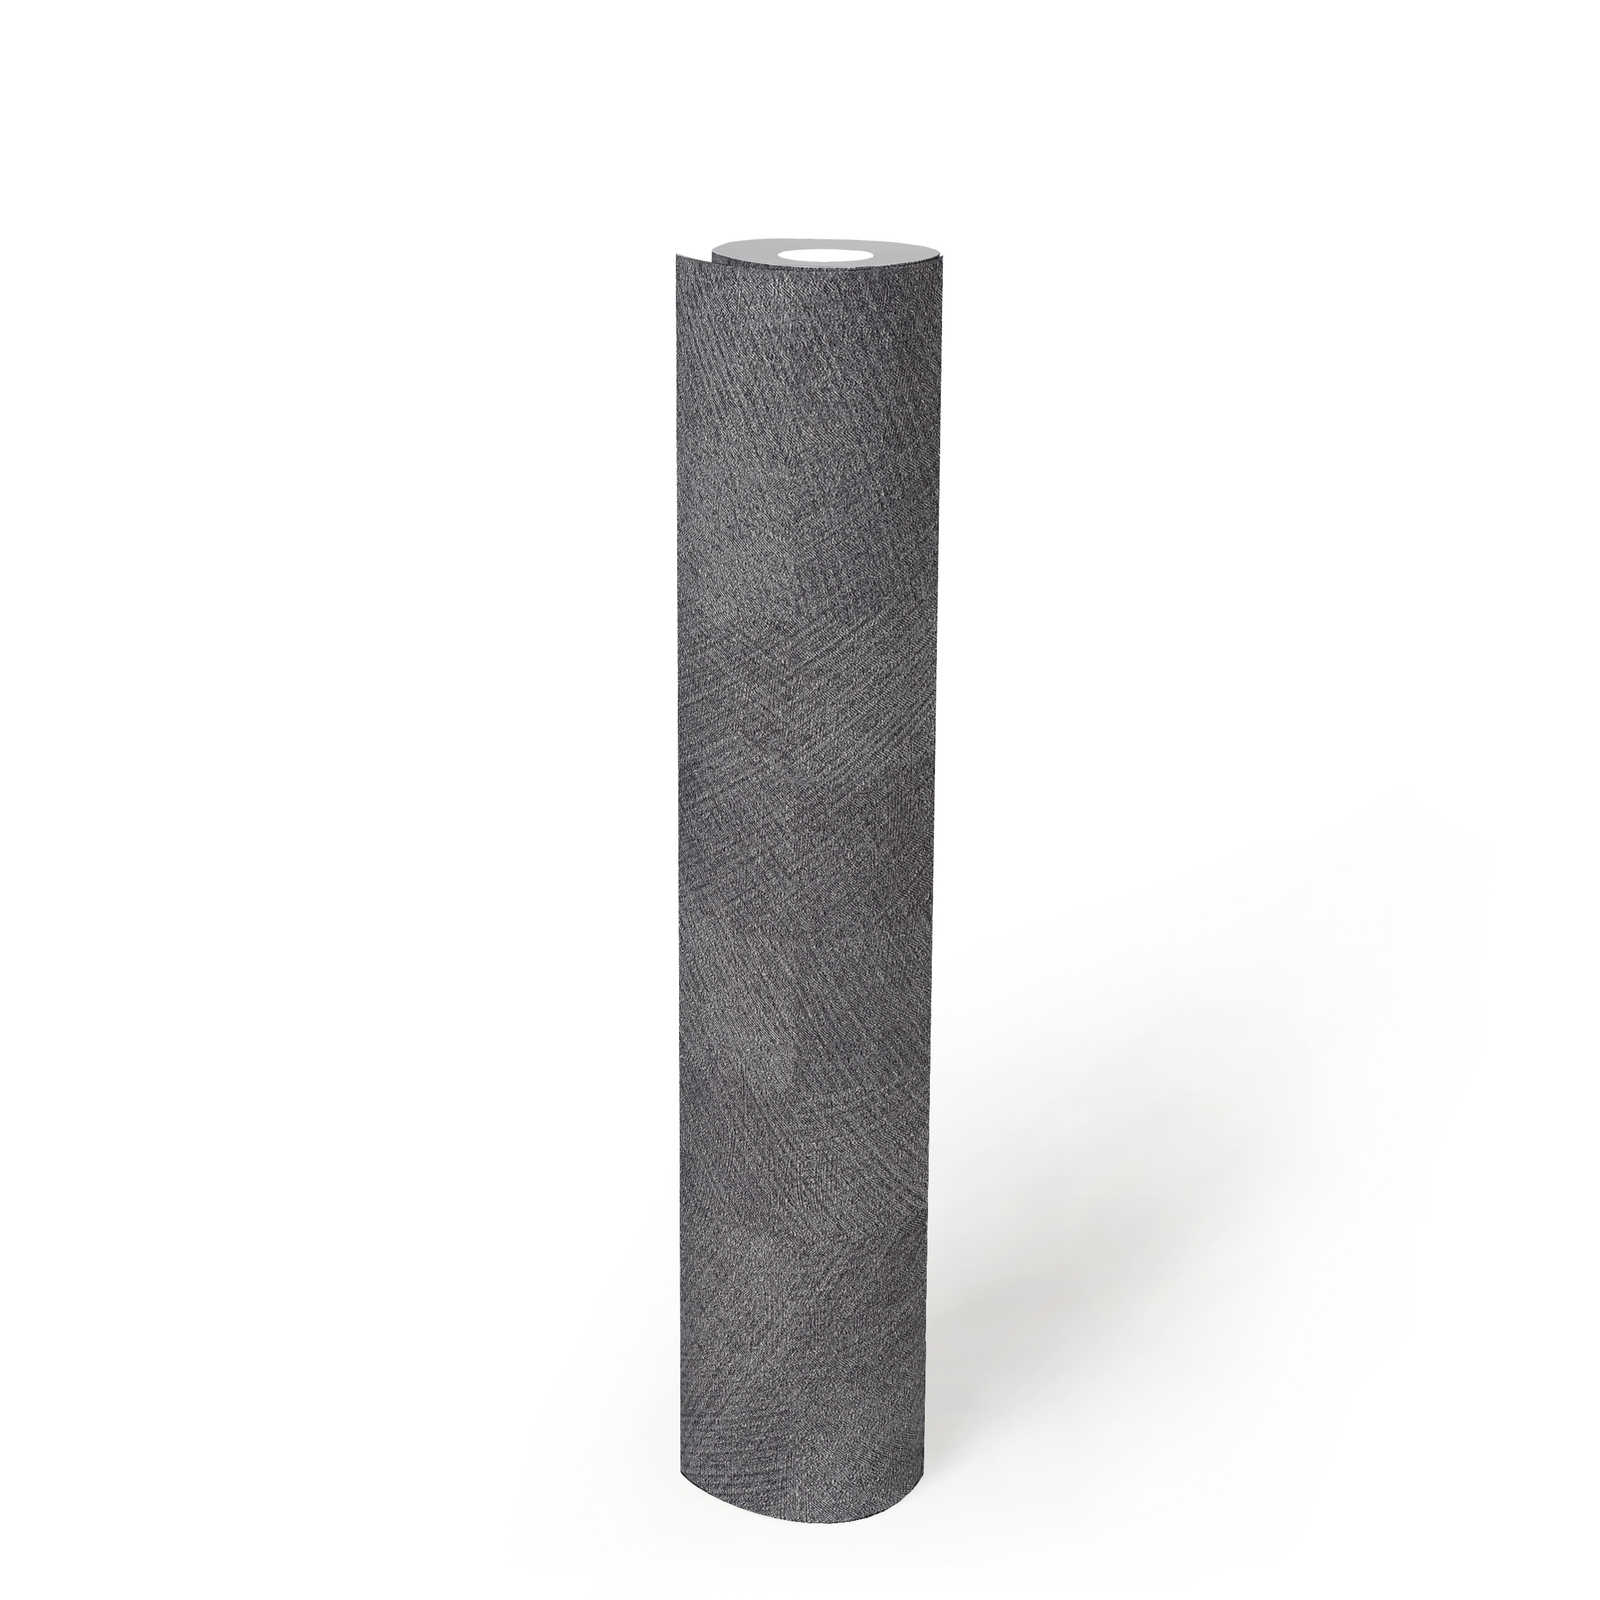             Carta da parati metallizzata a quadri grigio scuro con effetto lucido - grigio, metallizzato
        